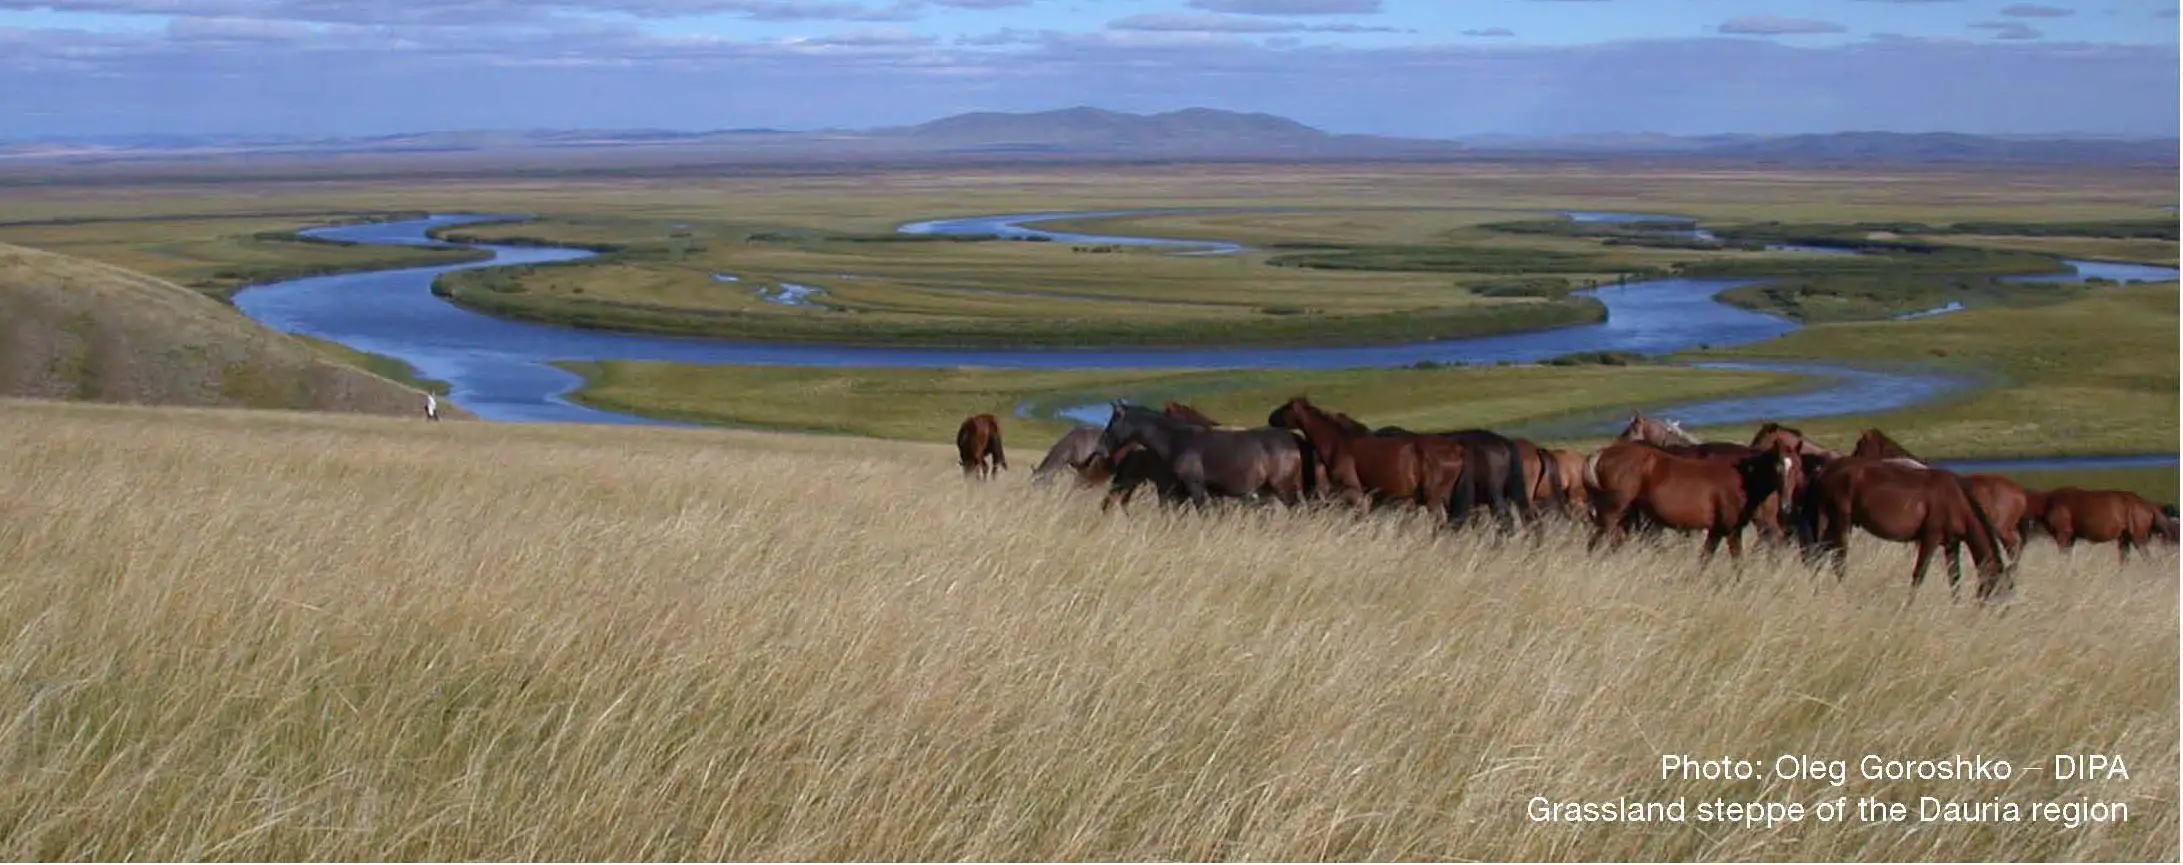 Grassland Steppe of the Dauria Region